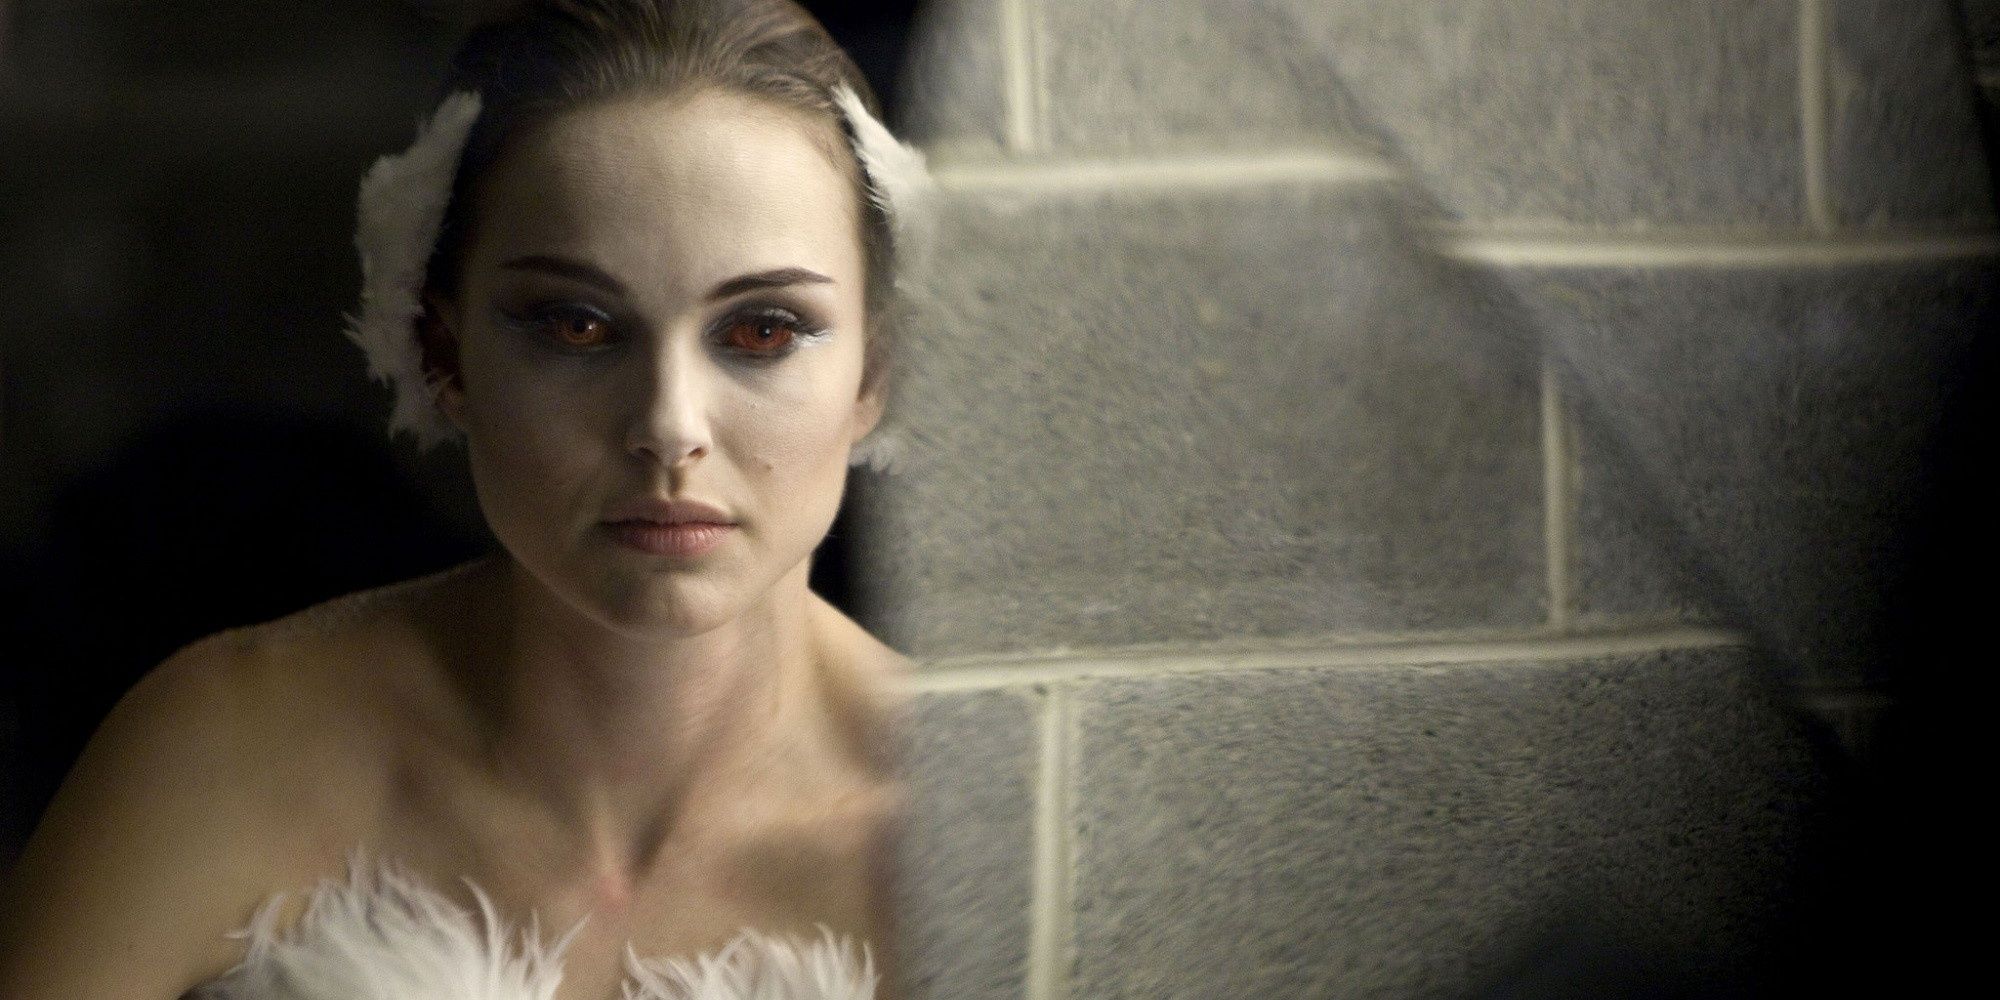 Natalie Portman'ın karakteri Nina, kan kırmızısı gözleriyle aynaya bakıyor.